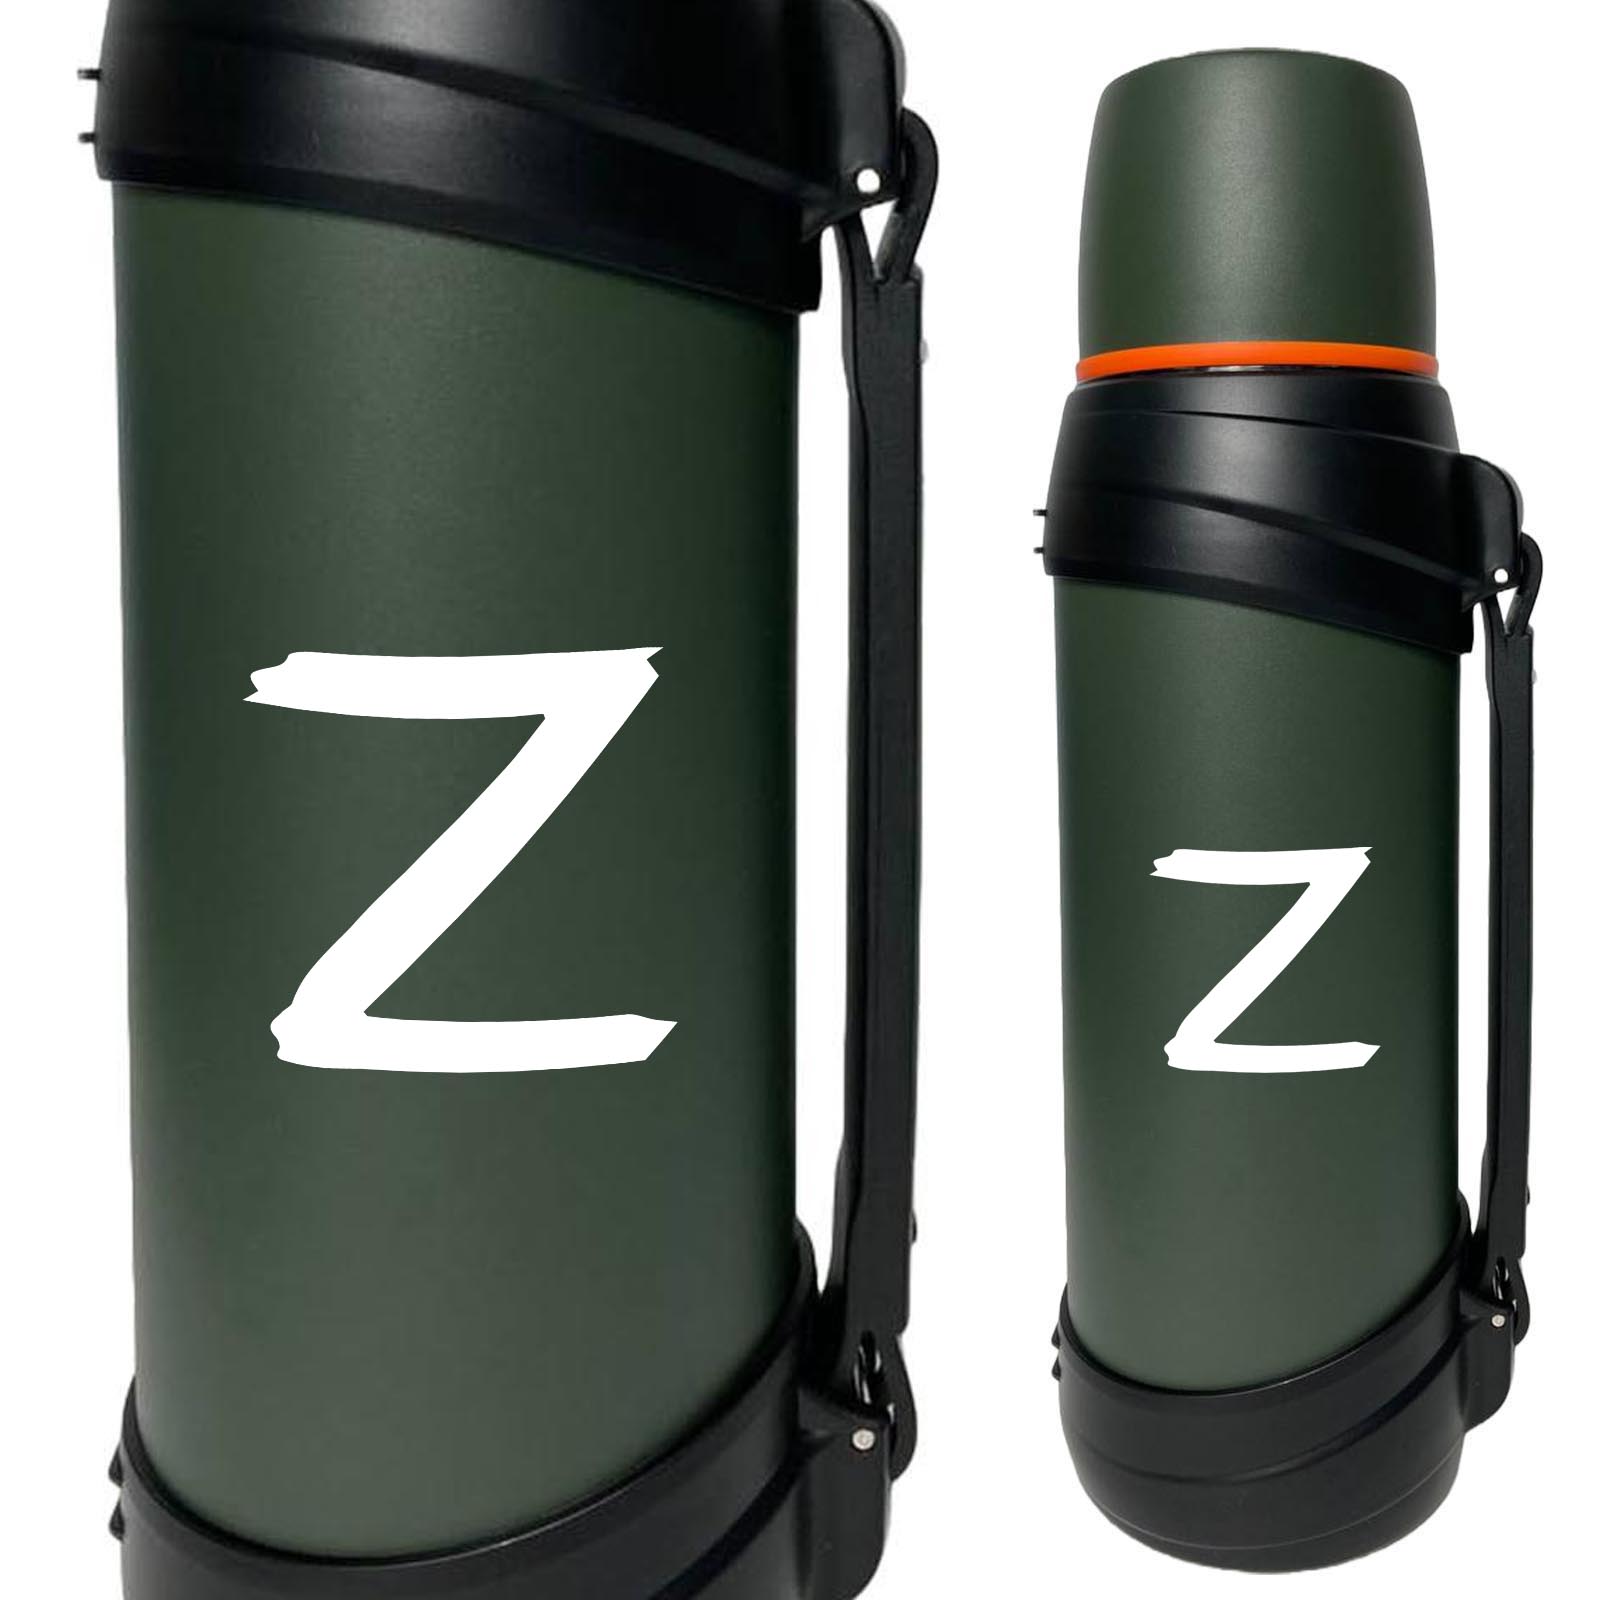 Купить армейский удобный термос с литерой Z онлайн